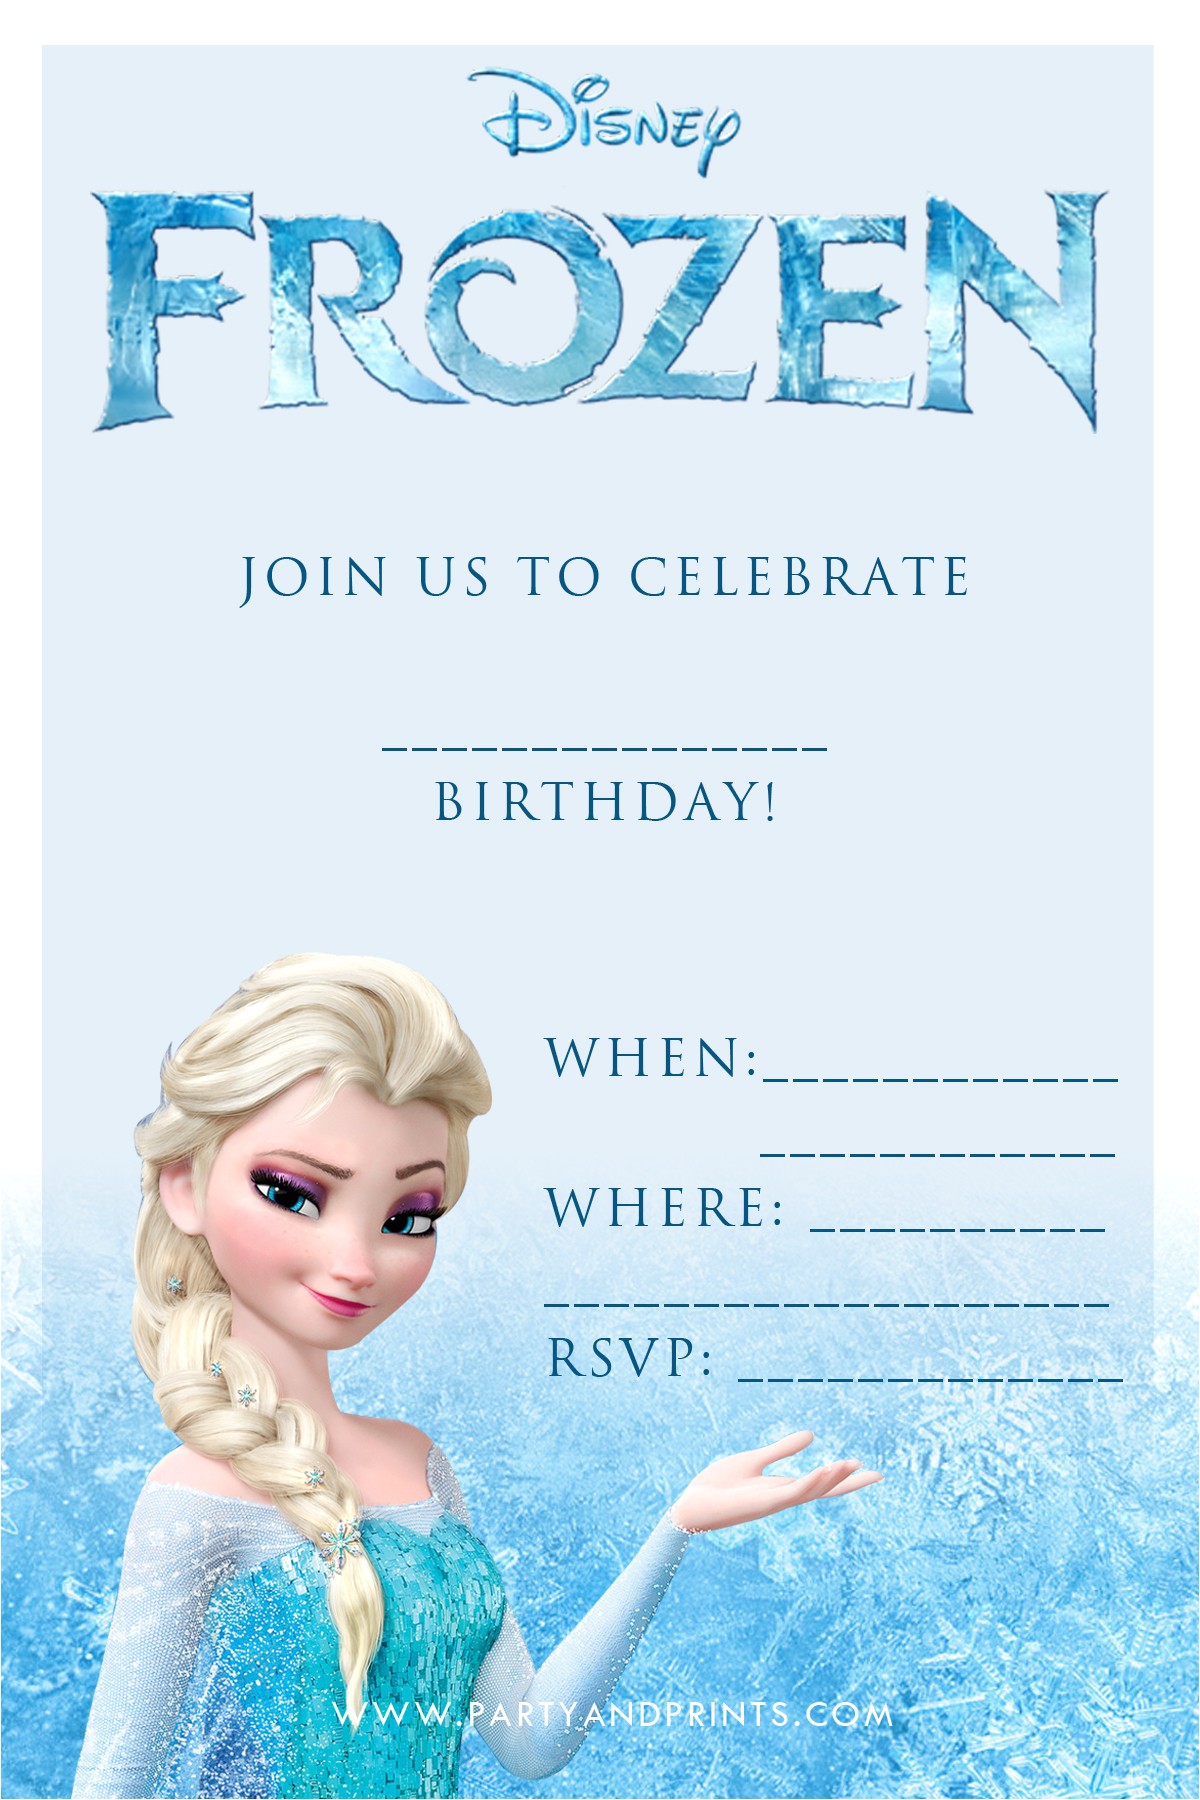 Free Printable Disney Frozen Birthday Party Invitations 20 Frozen Birthday Party Ideas